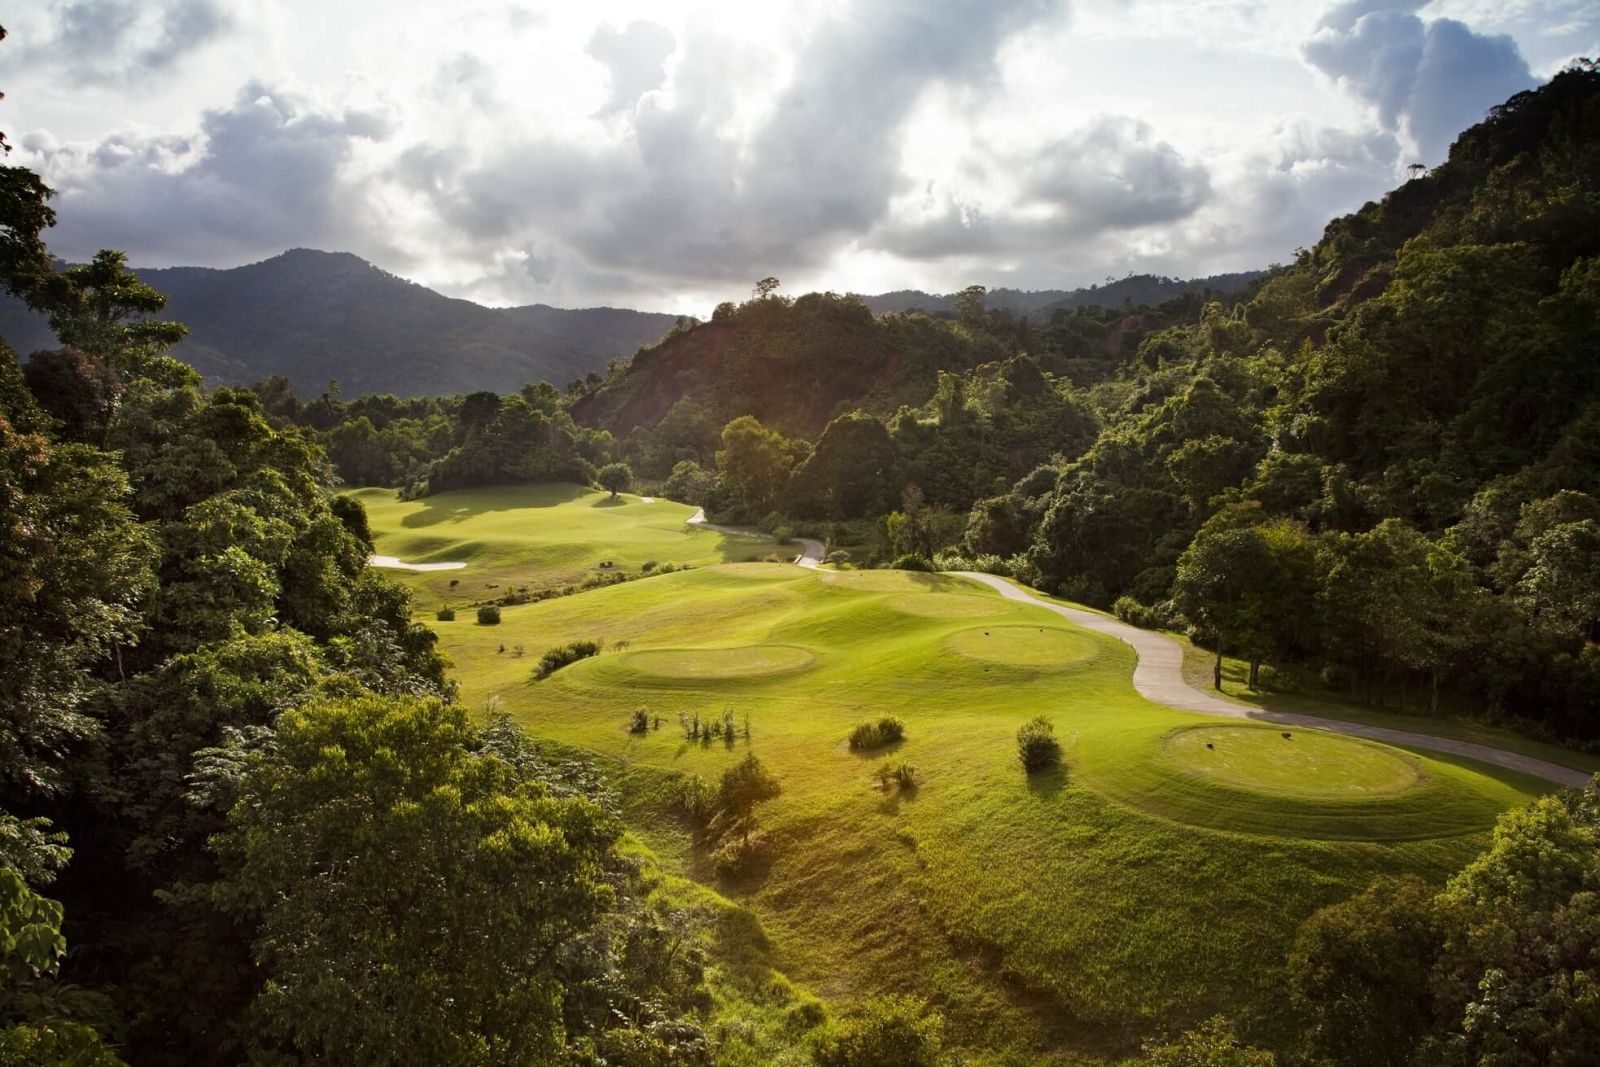 Danh sách các sân golf tốt nhất Phuket Thái Lan